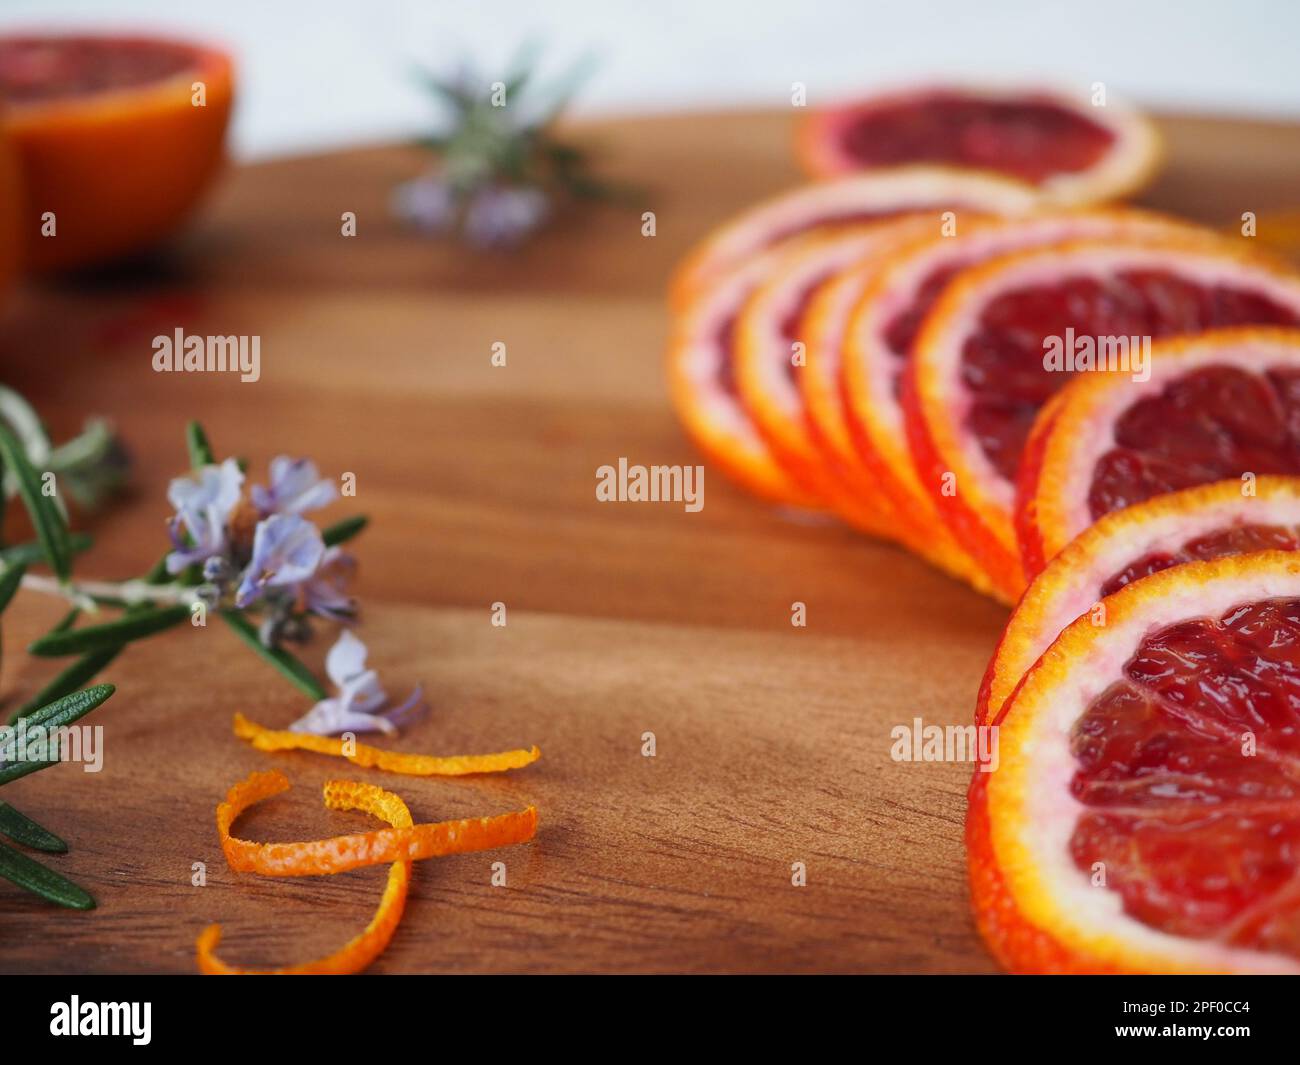 Gros plan d'oranges fraîchement tranchées (moro sicilien) sur une planche à découper avec des branches de romarin fleuri et des boucles de zeste d'orange Banque D'Images